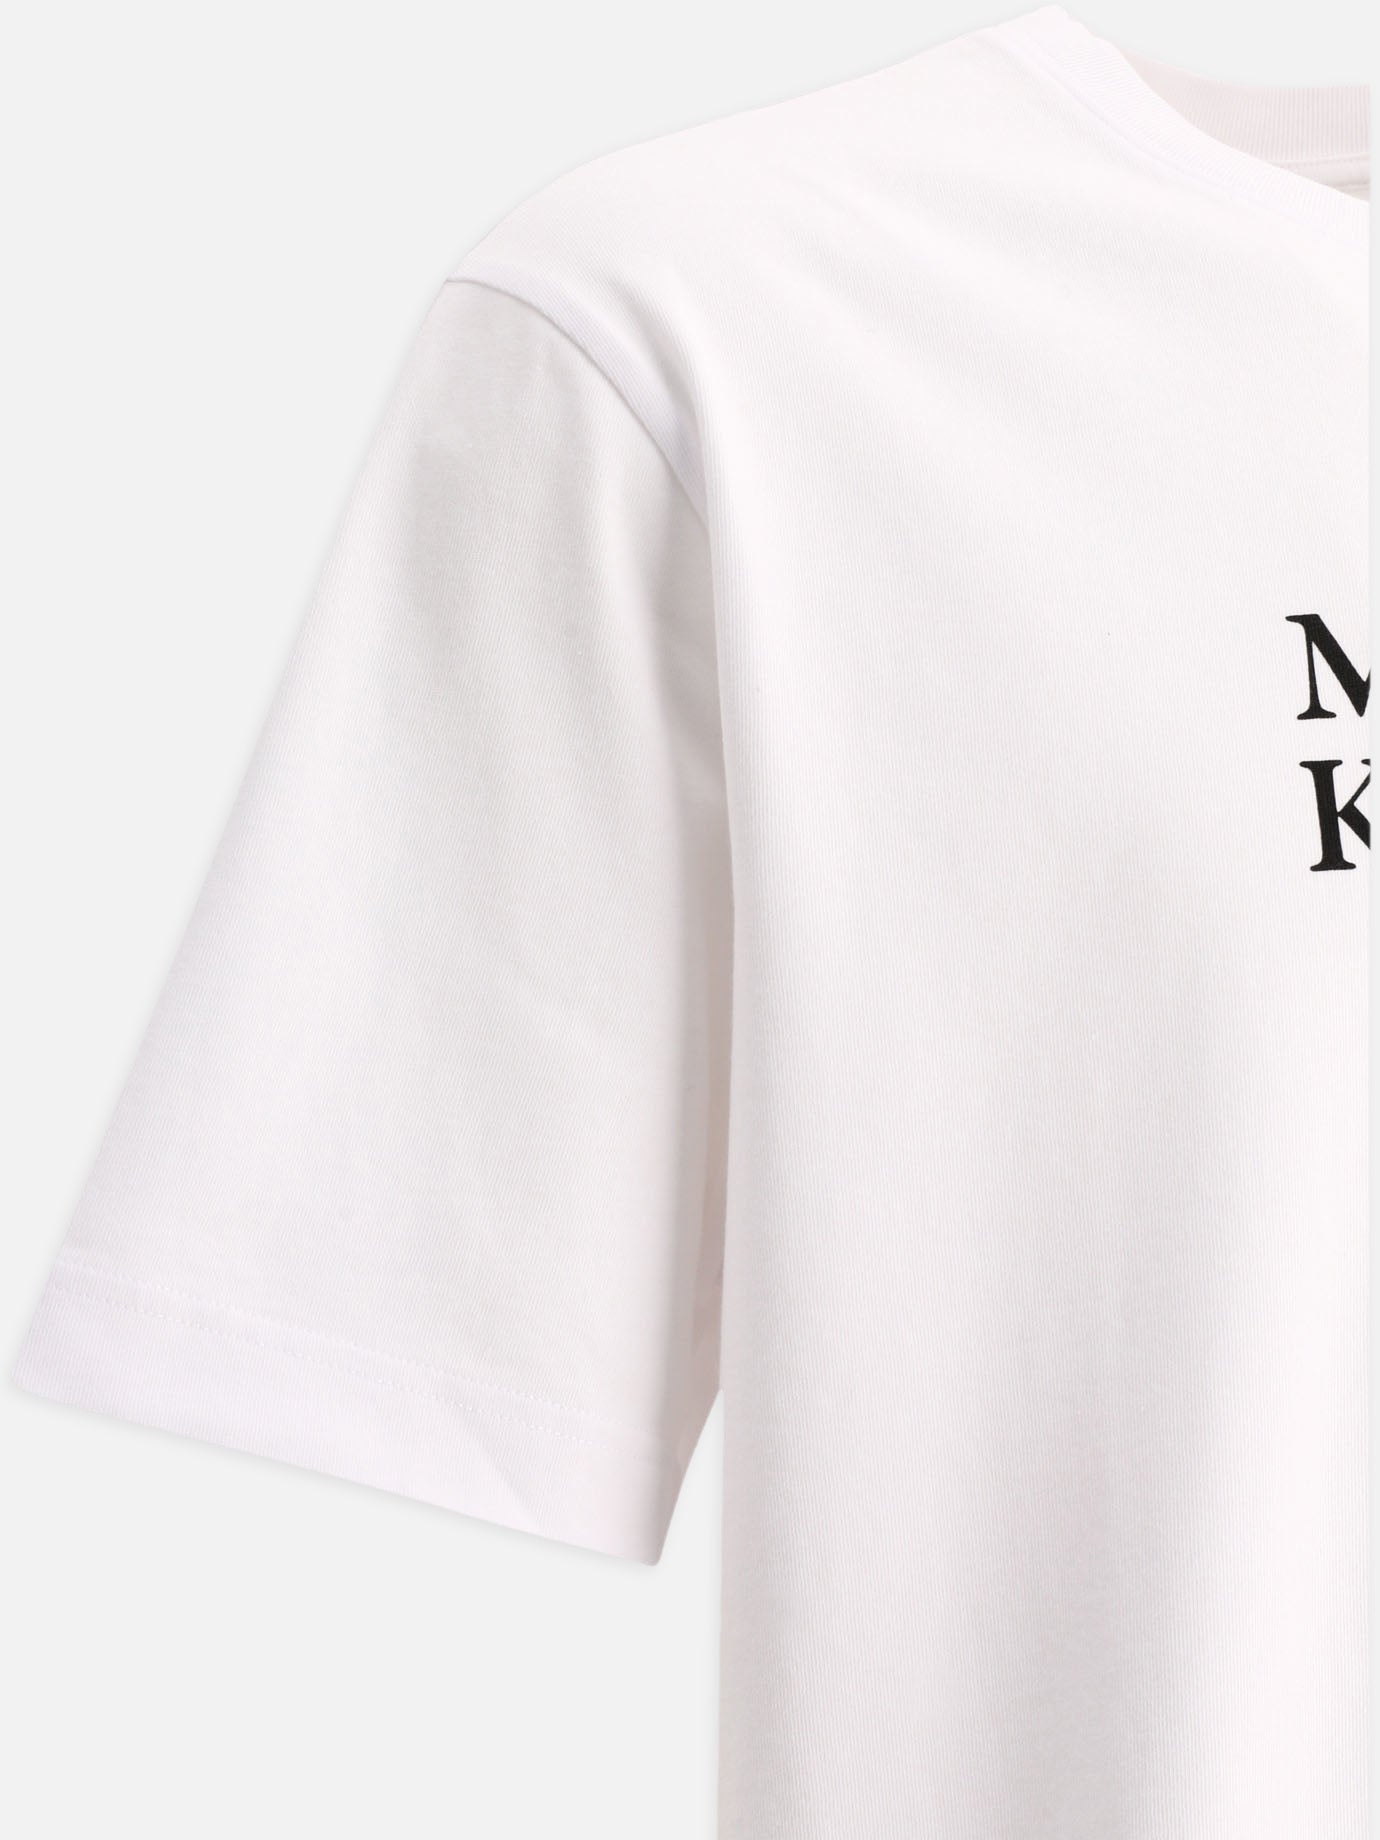 "Maison Kitsuné Flowers" t-shirt